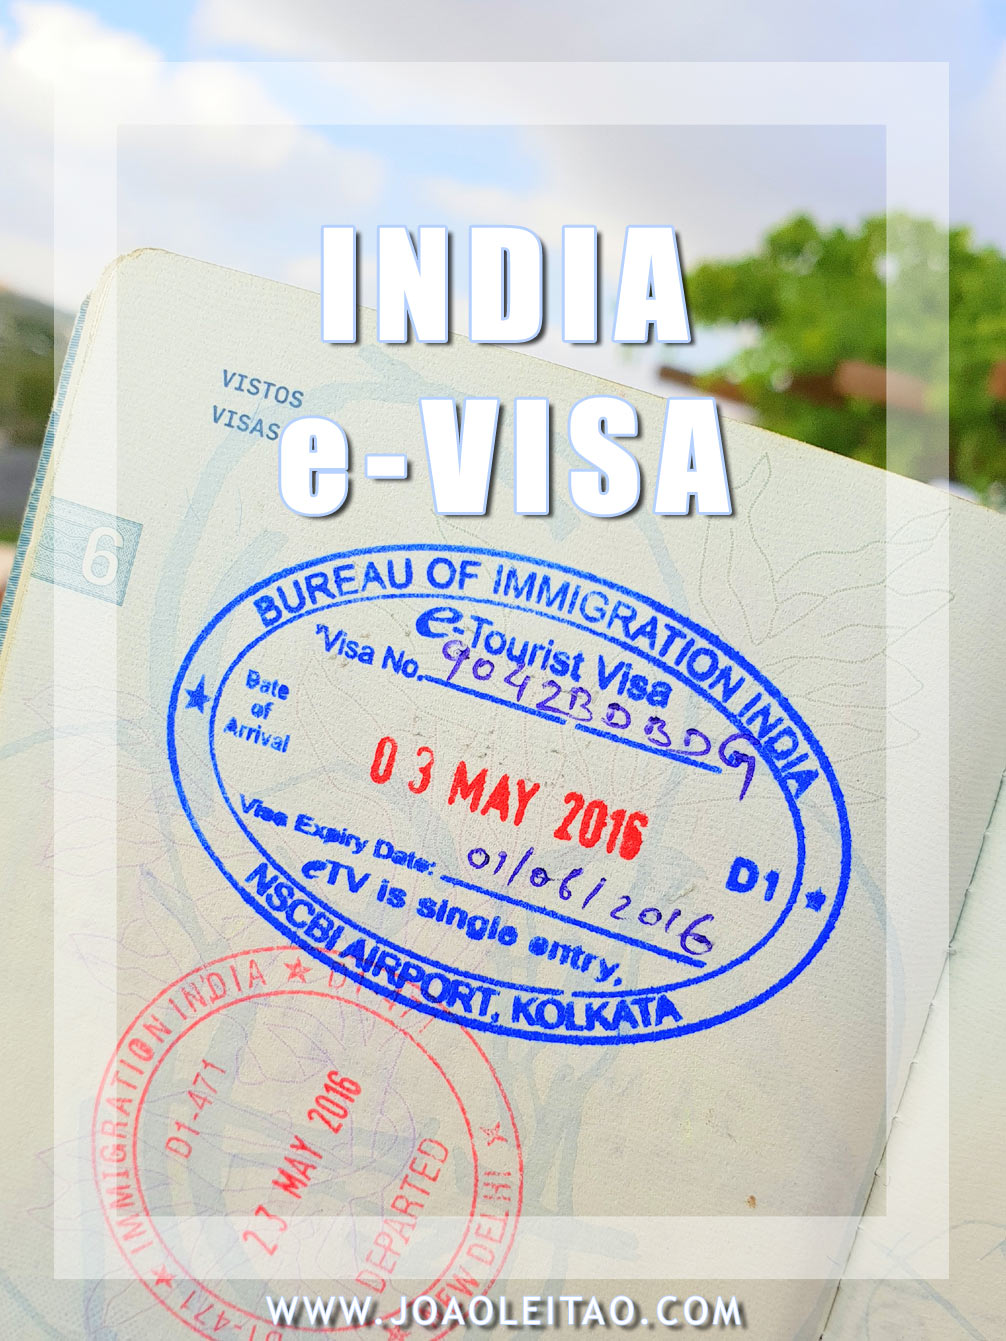 e visa vs tourist visa india